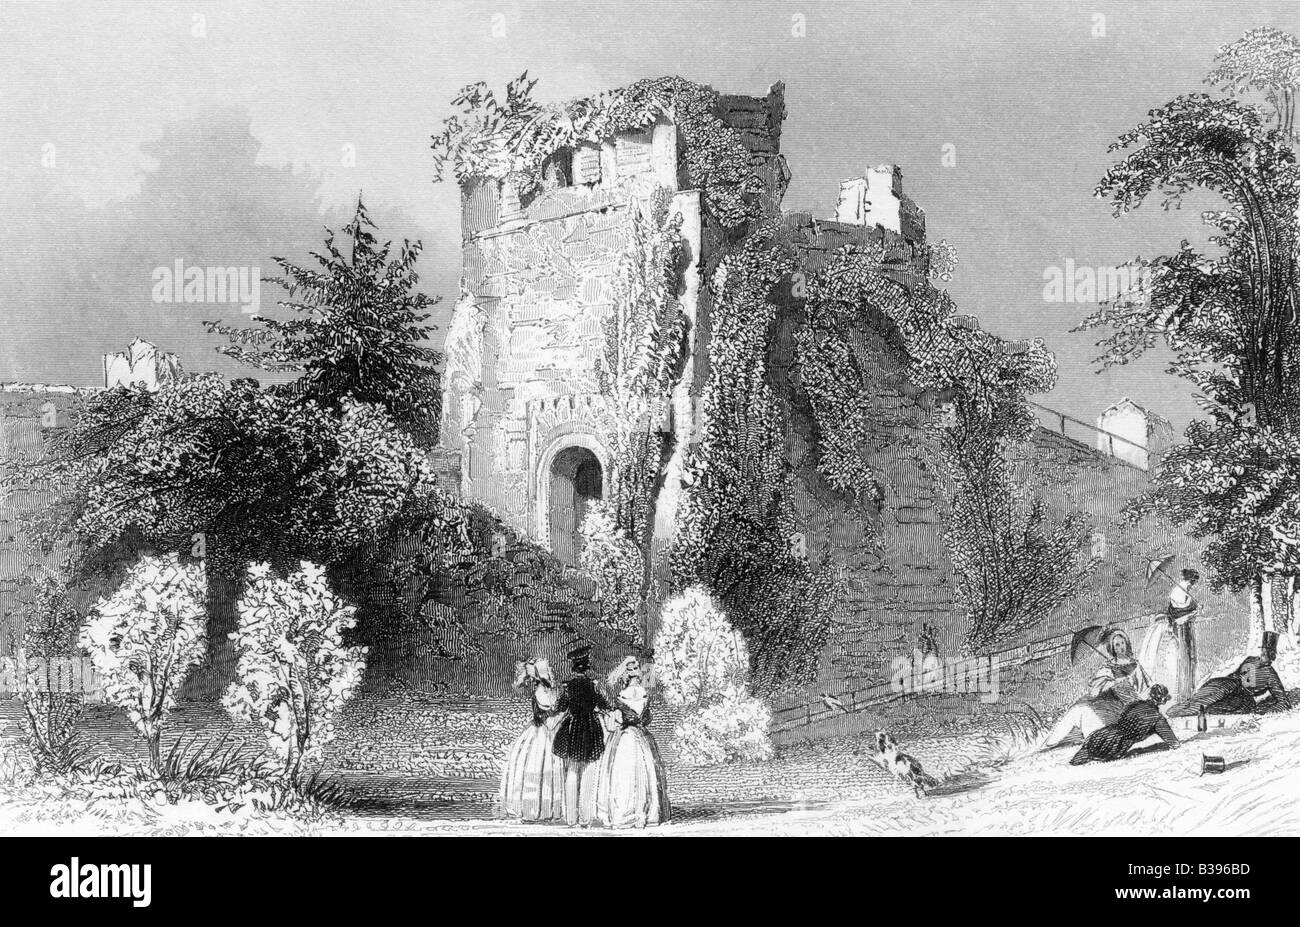 Ruines du château de Farnham Illustration Circa 1845 Gravure du xixe siècle Banque D'Images